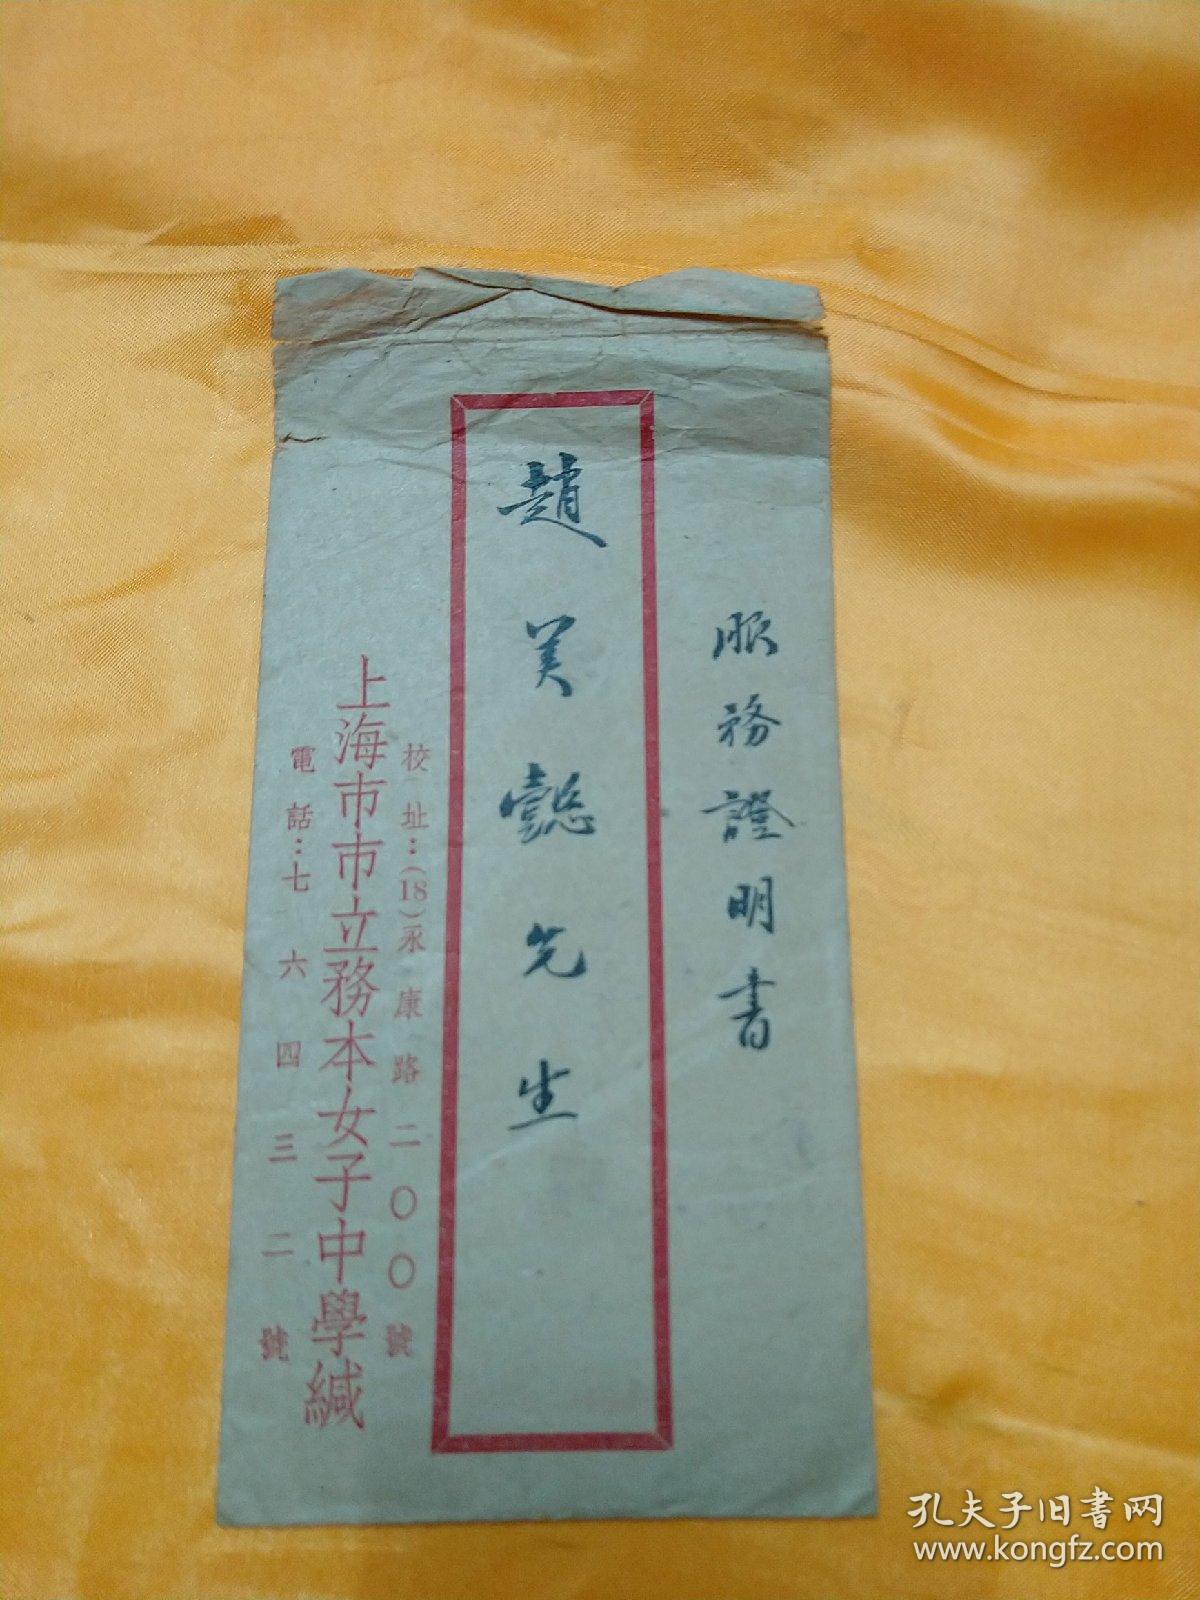 中国第一所女子中学《上海市市立务本女子中学》服务证明书(附信封))